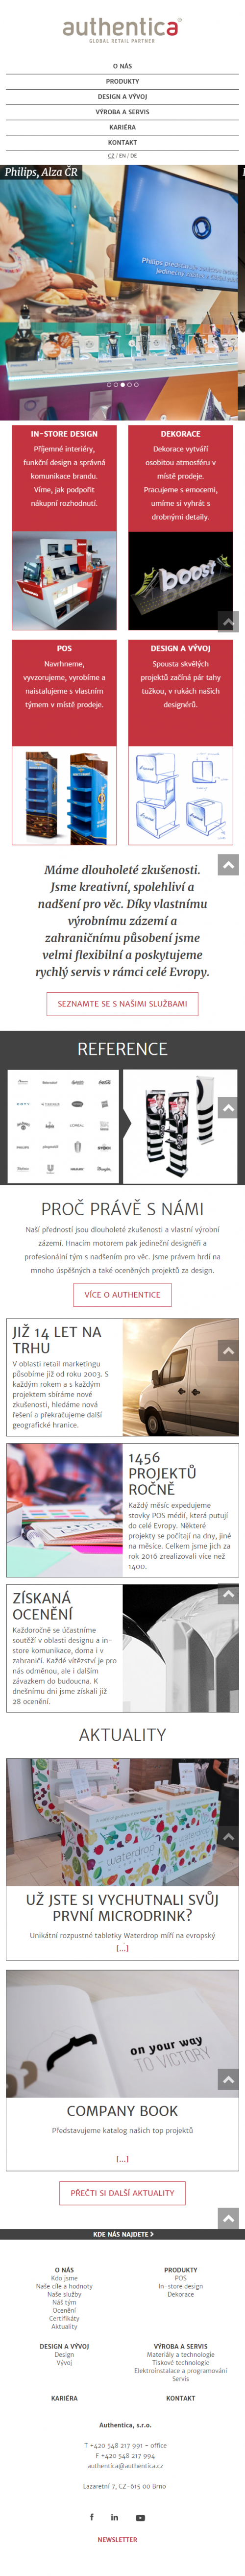 Tvorba nového webu Authentica.cz - Screenshot mobilní verze